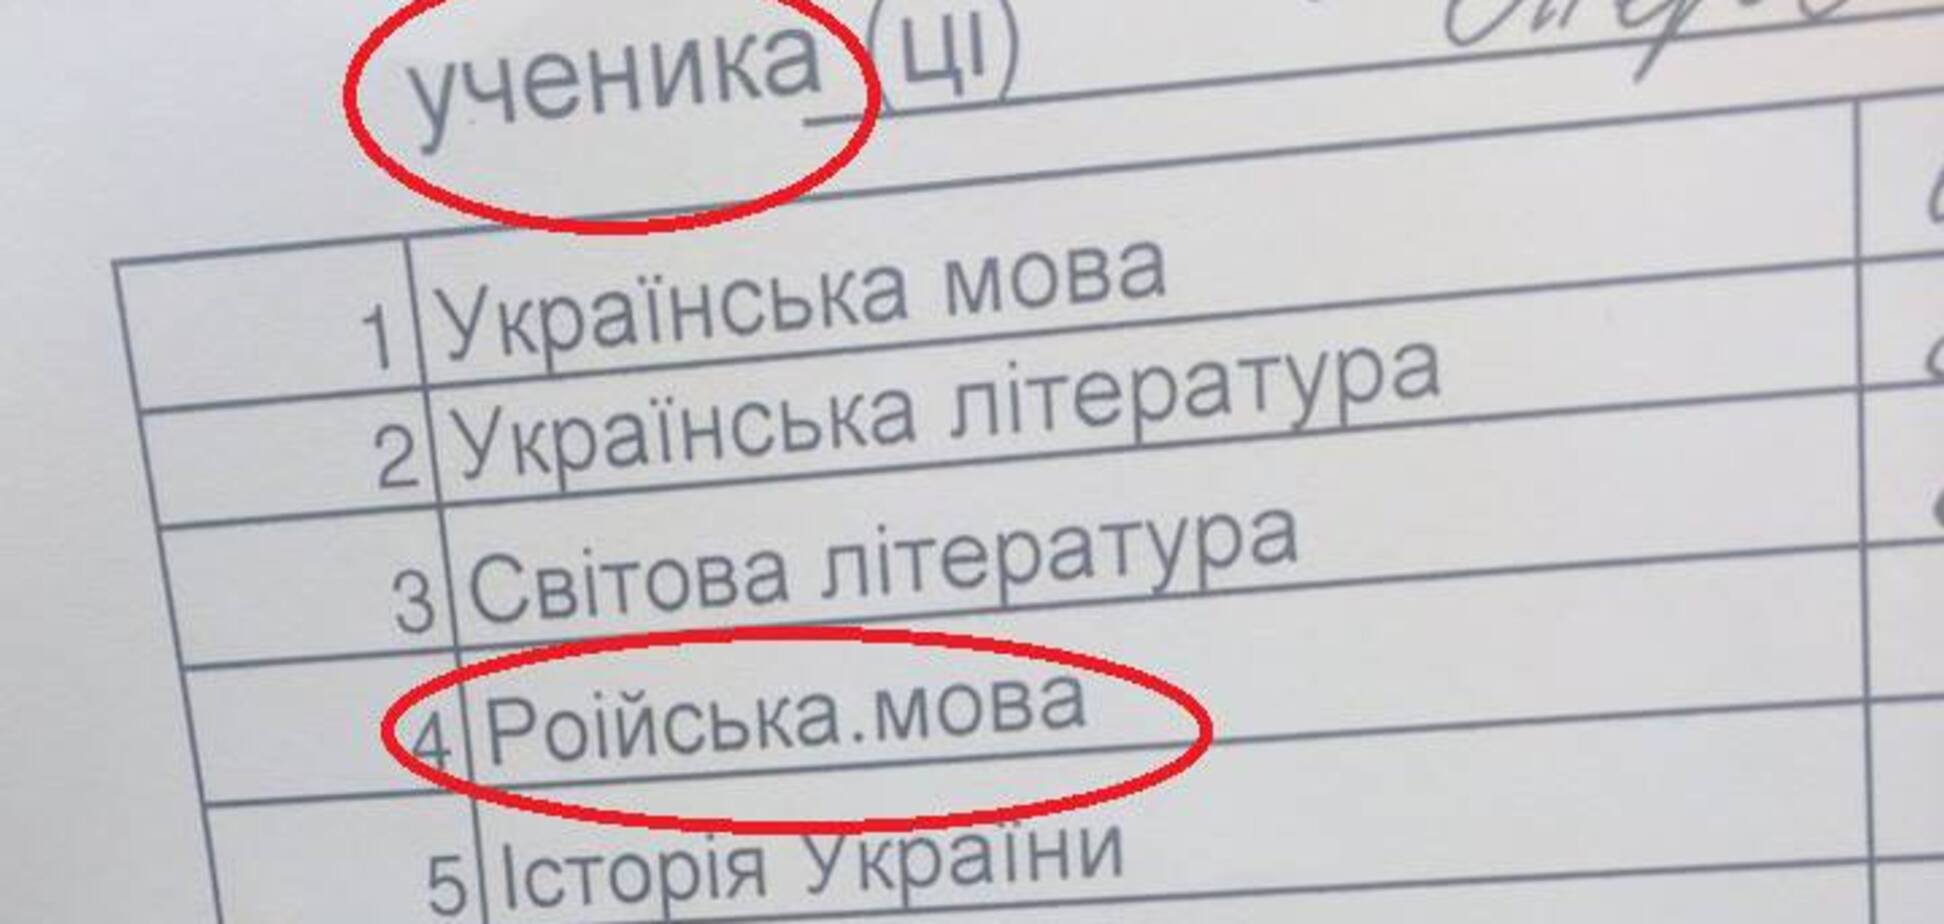 'Роіський, мордорський, мокшанський': одесская гимназия оскандалилась из-за языка